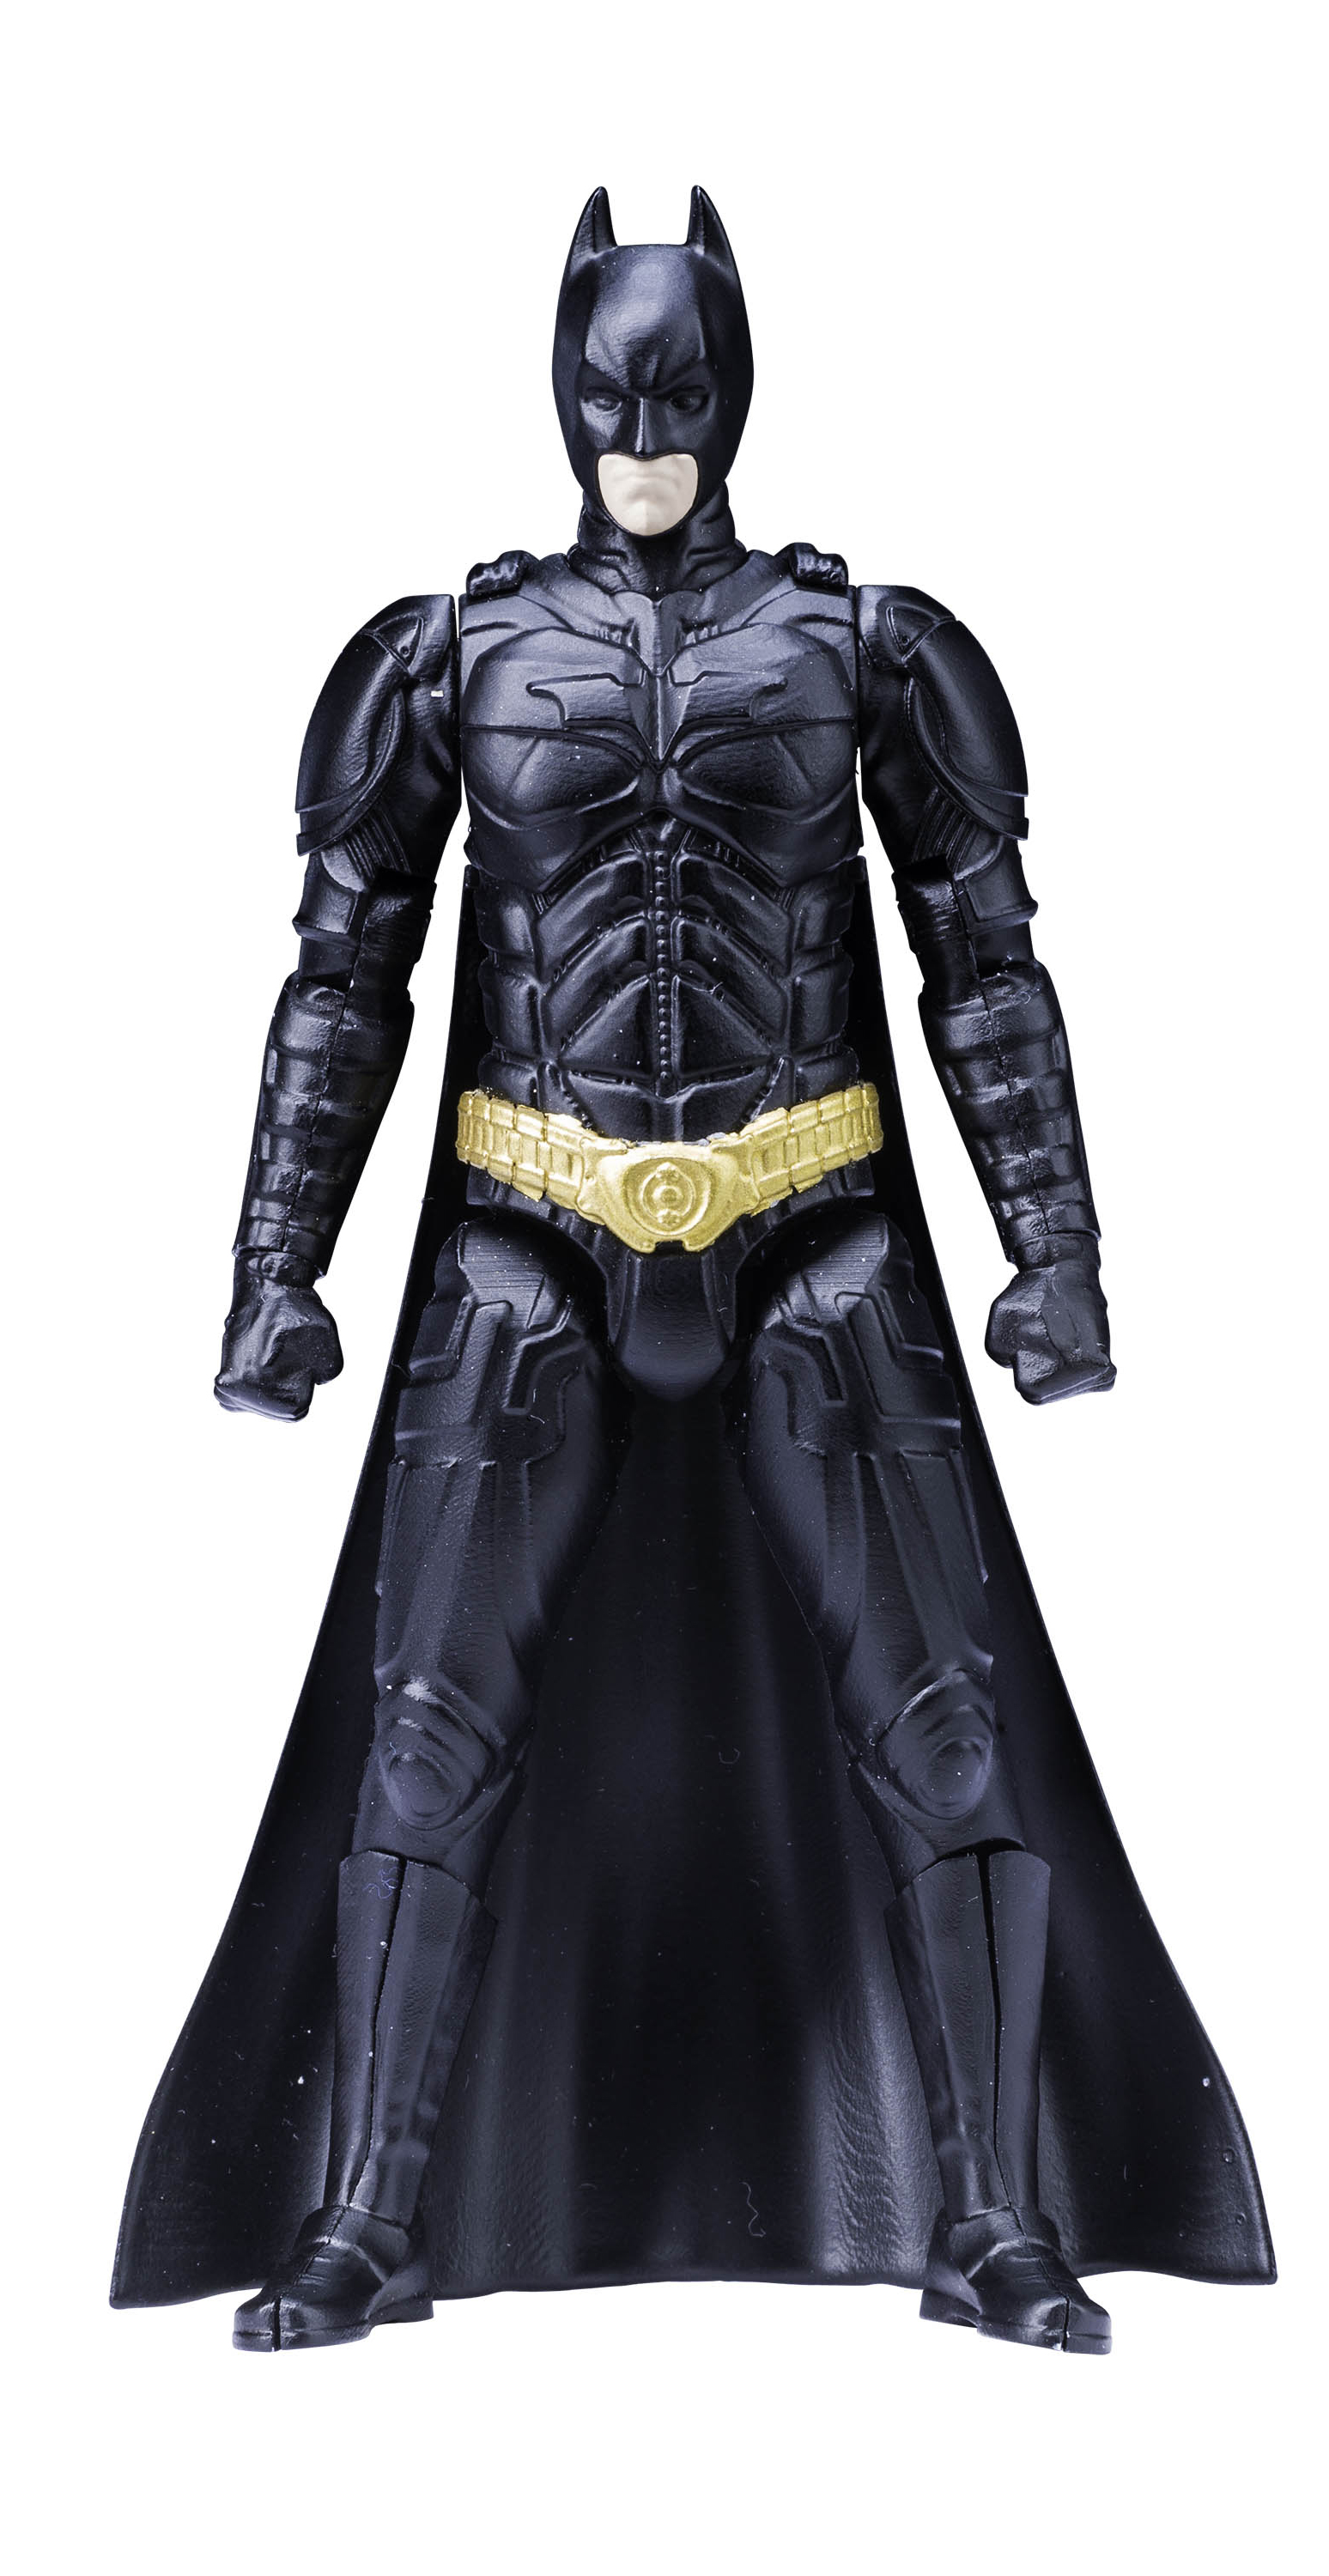 Bandai Sprukits Batman. Batman model Kit Bandai. Конструктор Bandai DC Comics новый 52 Бэтмен 1. Batman Dark Knight Rises DC Multiverse.